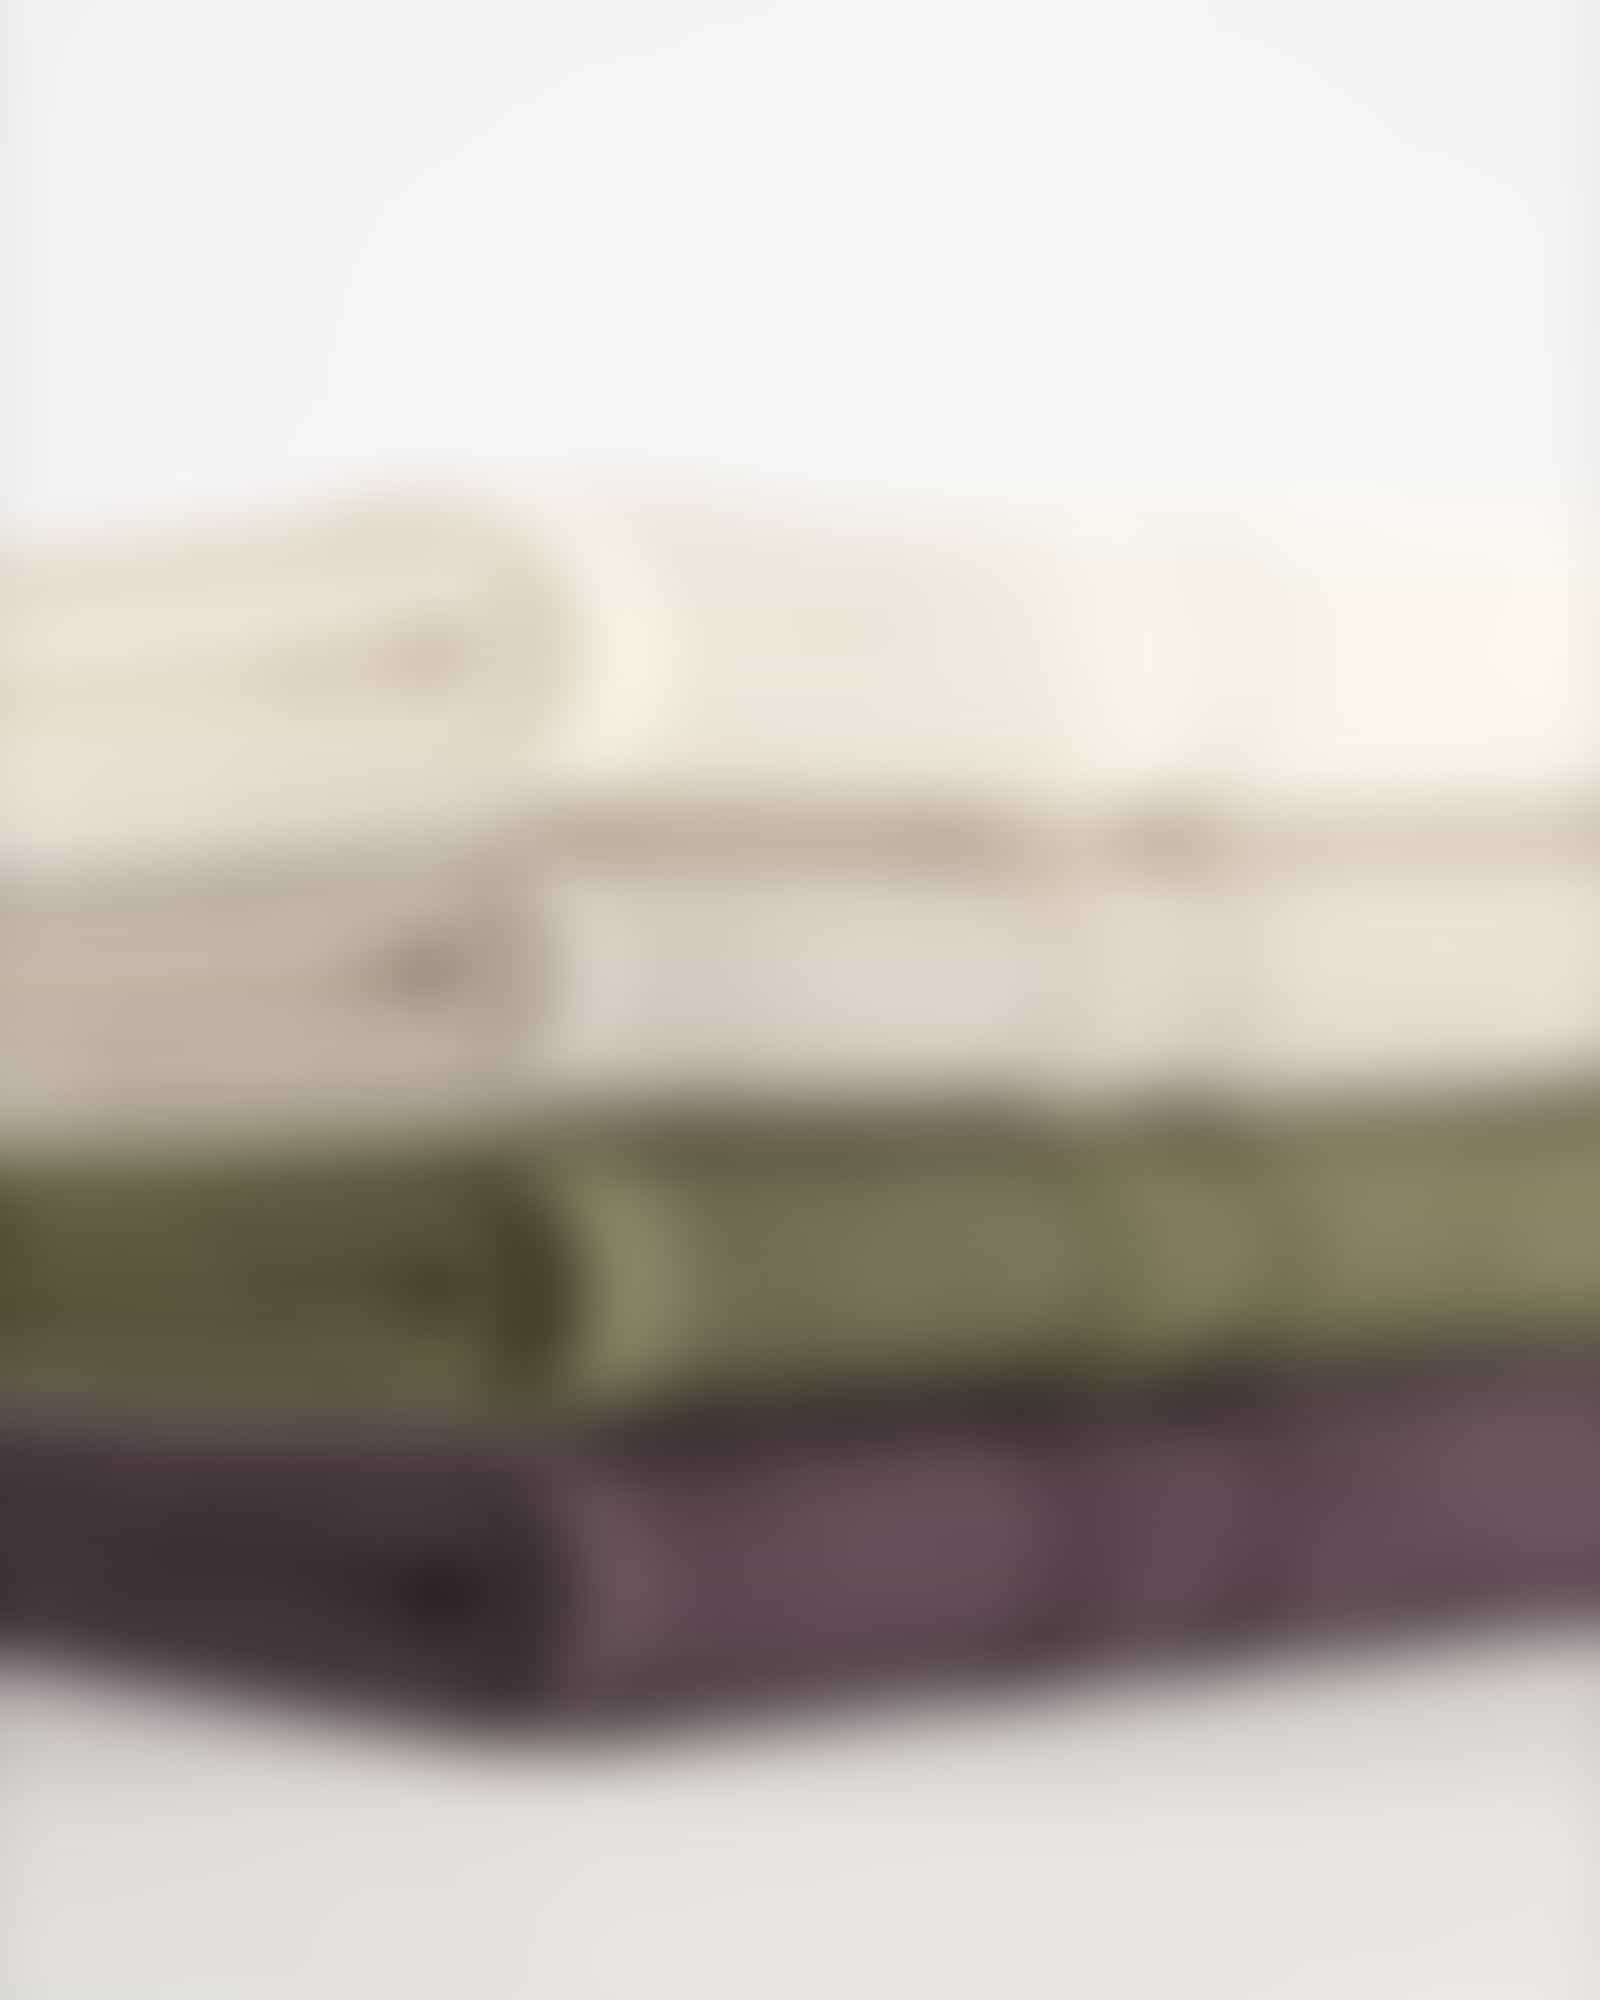 Möve Handtücher Wellbeing Perlstruktur - Farbe: cashmere - 713 - Handtuch 50x100 cm